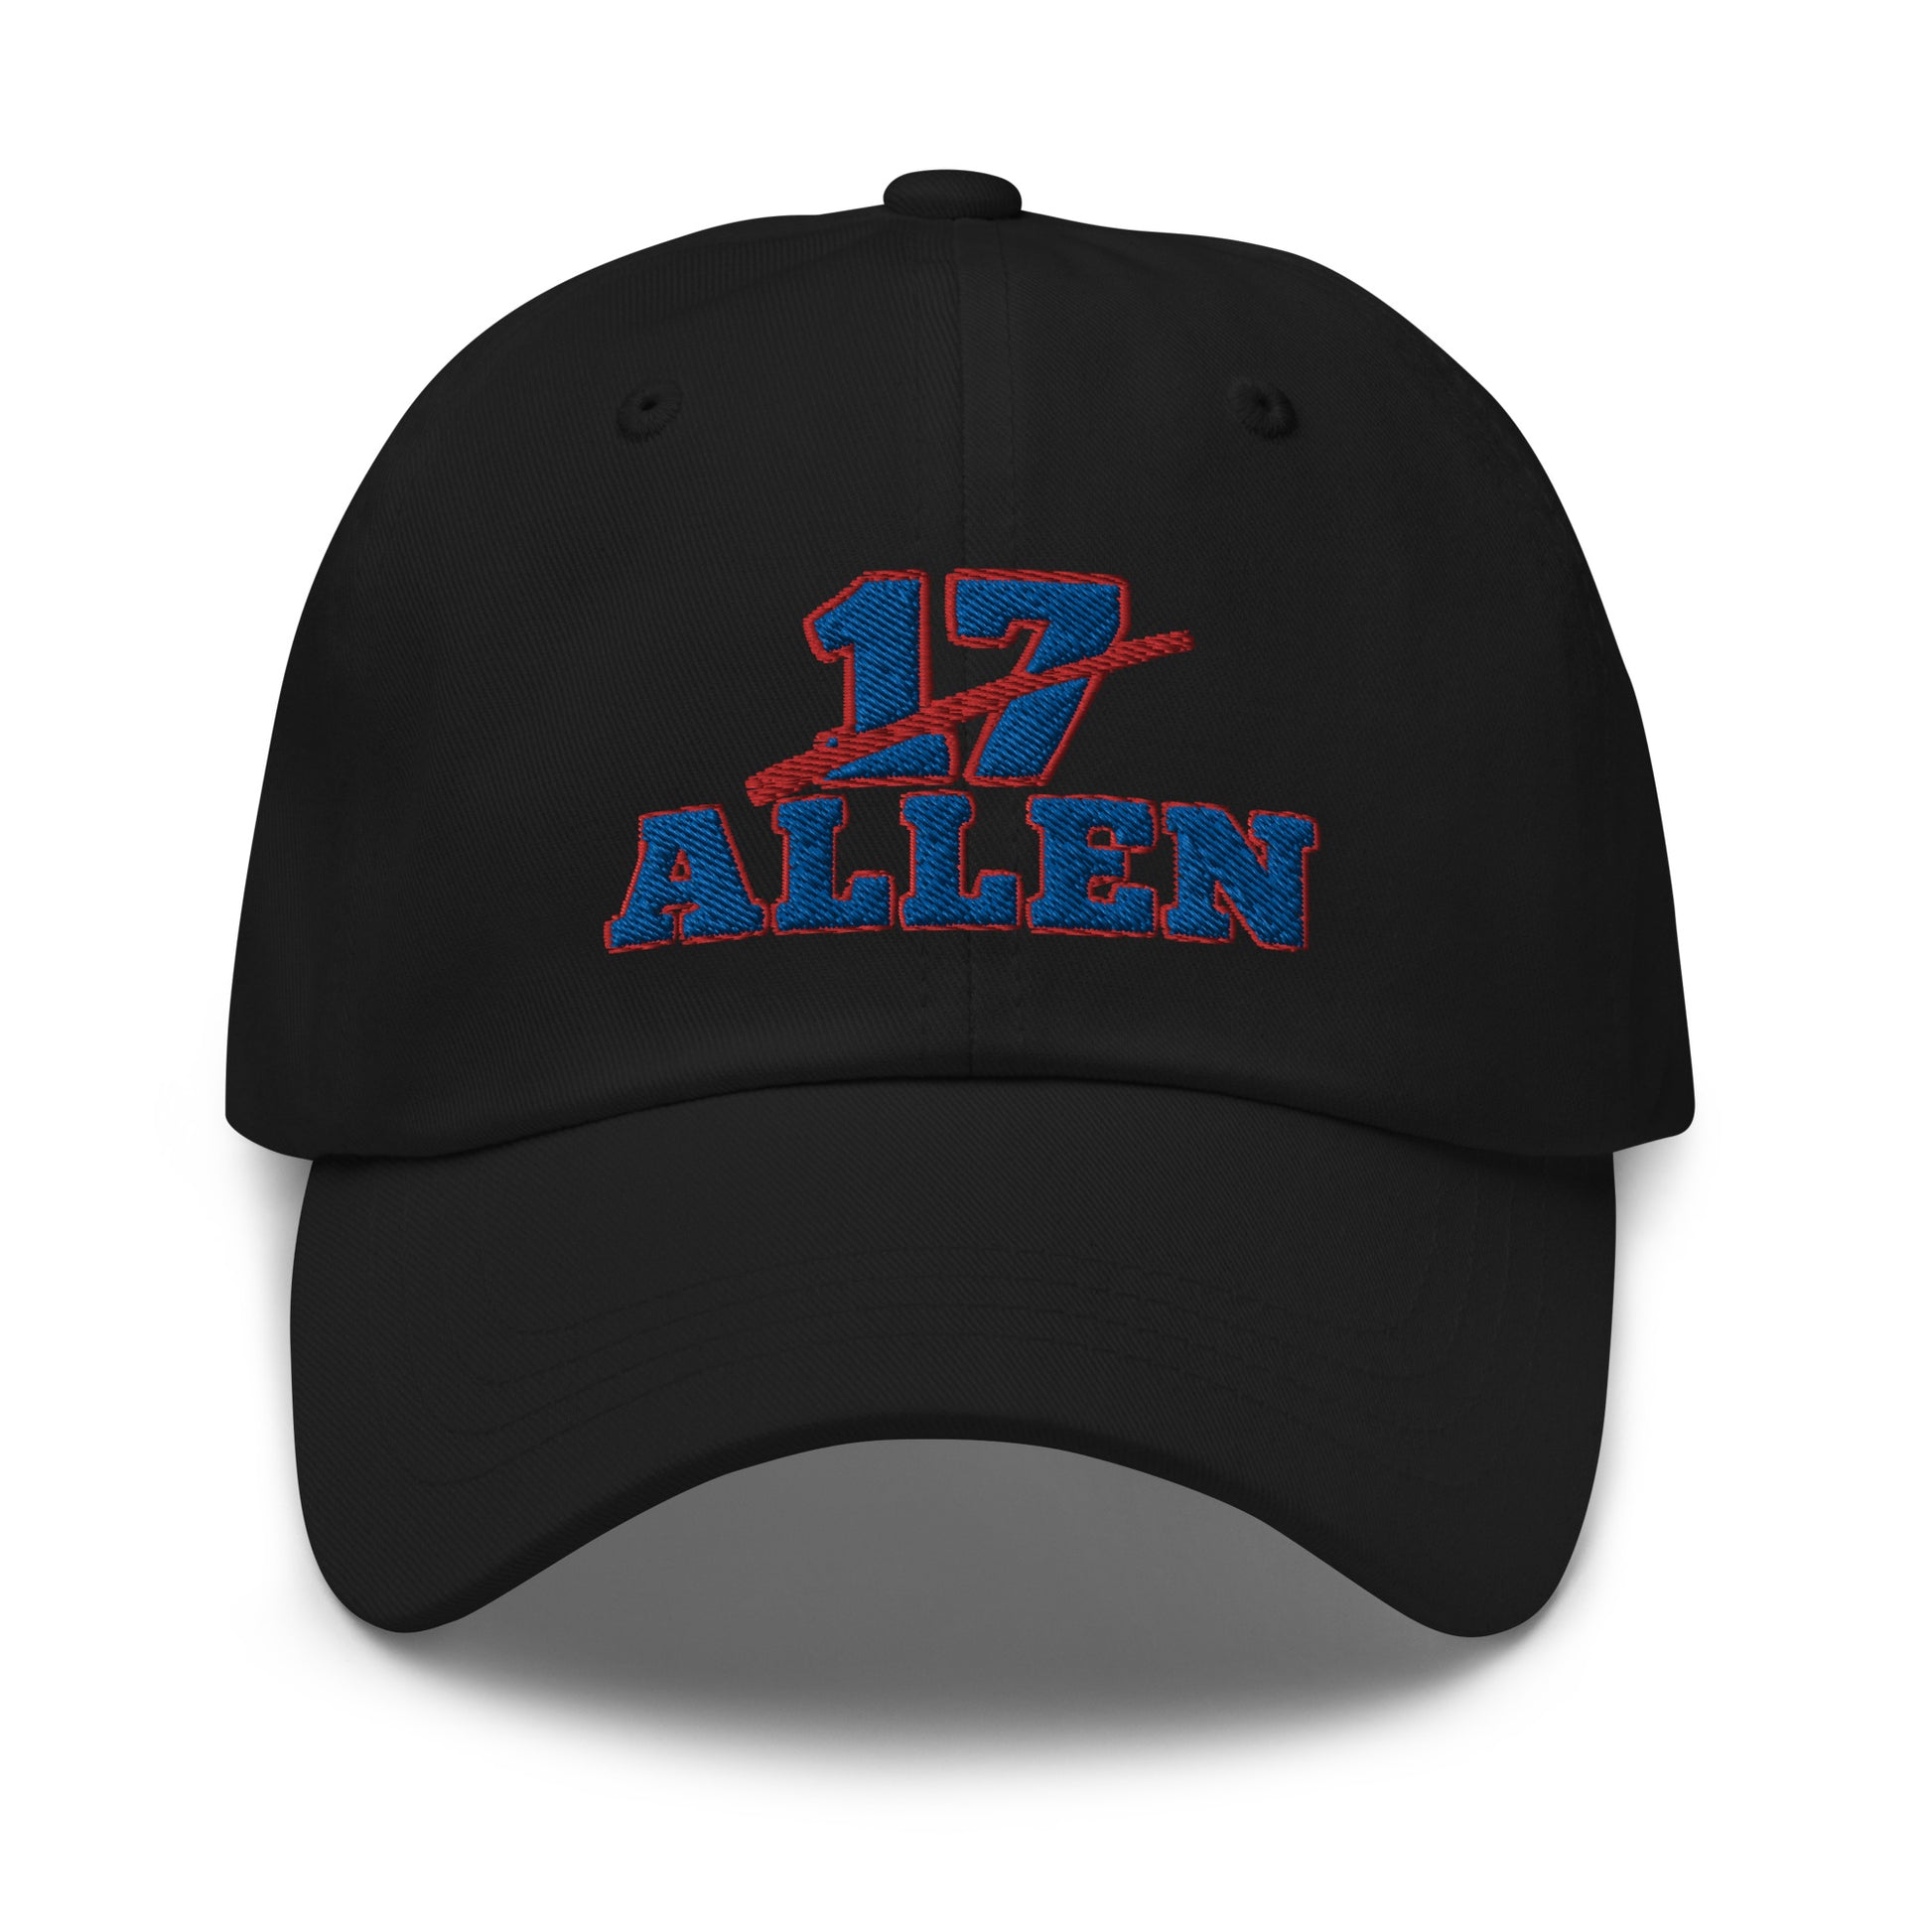 Josh Allen Big Hat / Josh Allen Hat / Buffalo Bills Dad Hat Pink